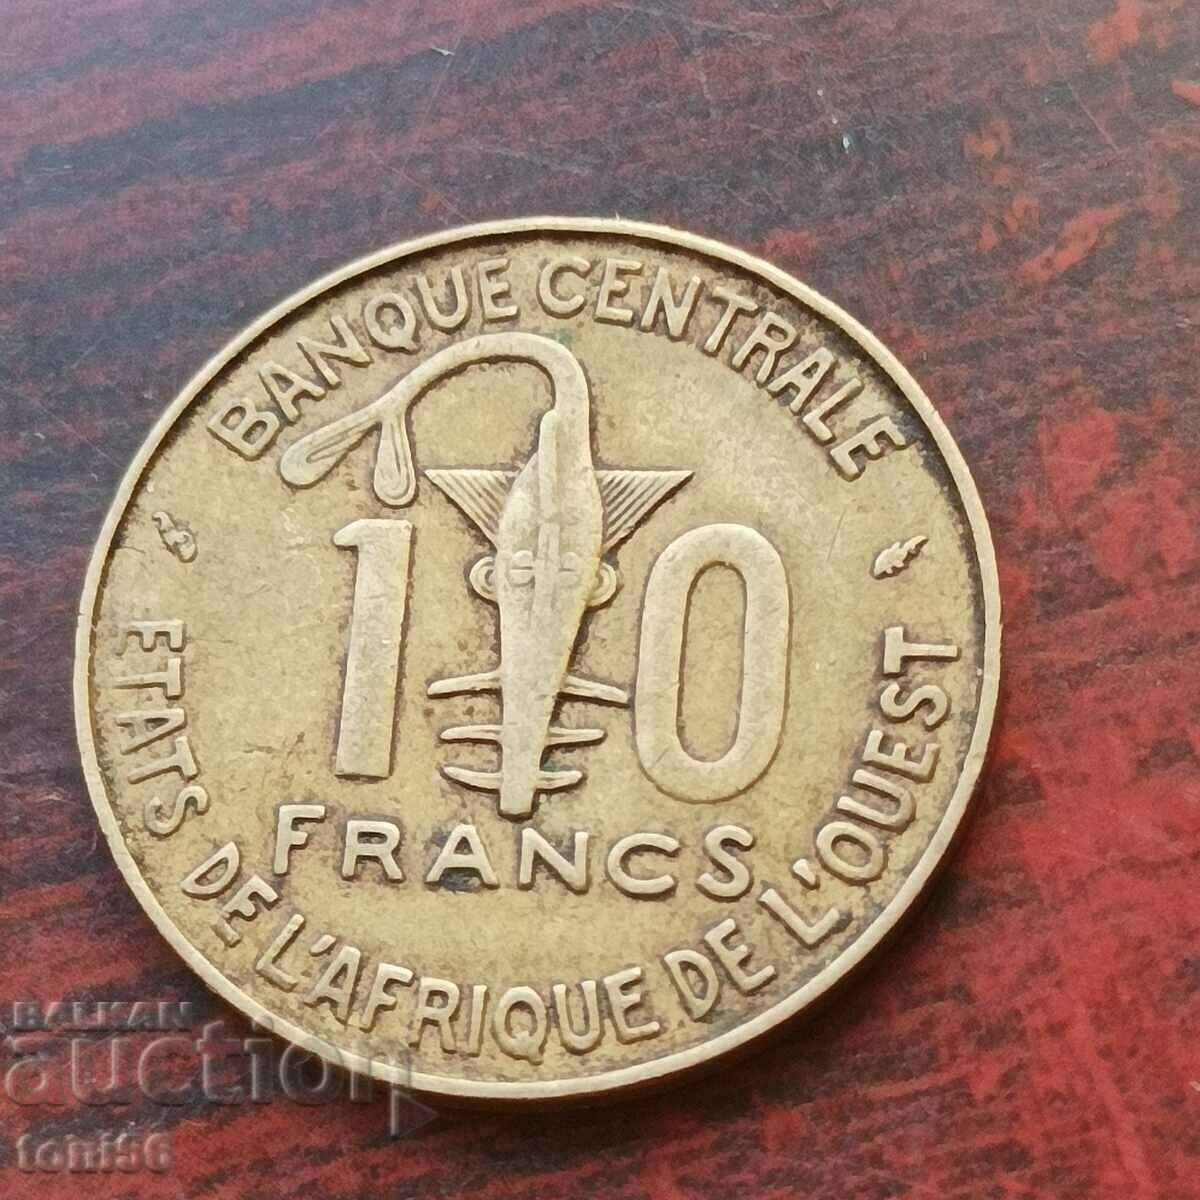 Africa de Vest 10 franci 1976